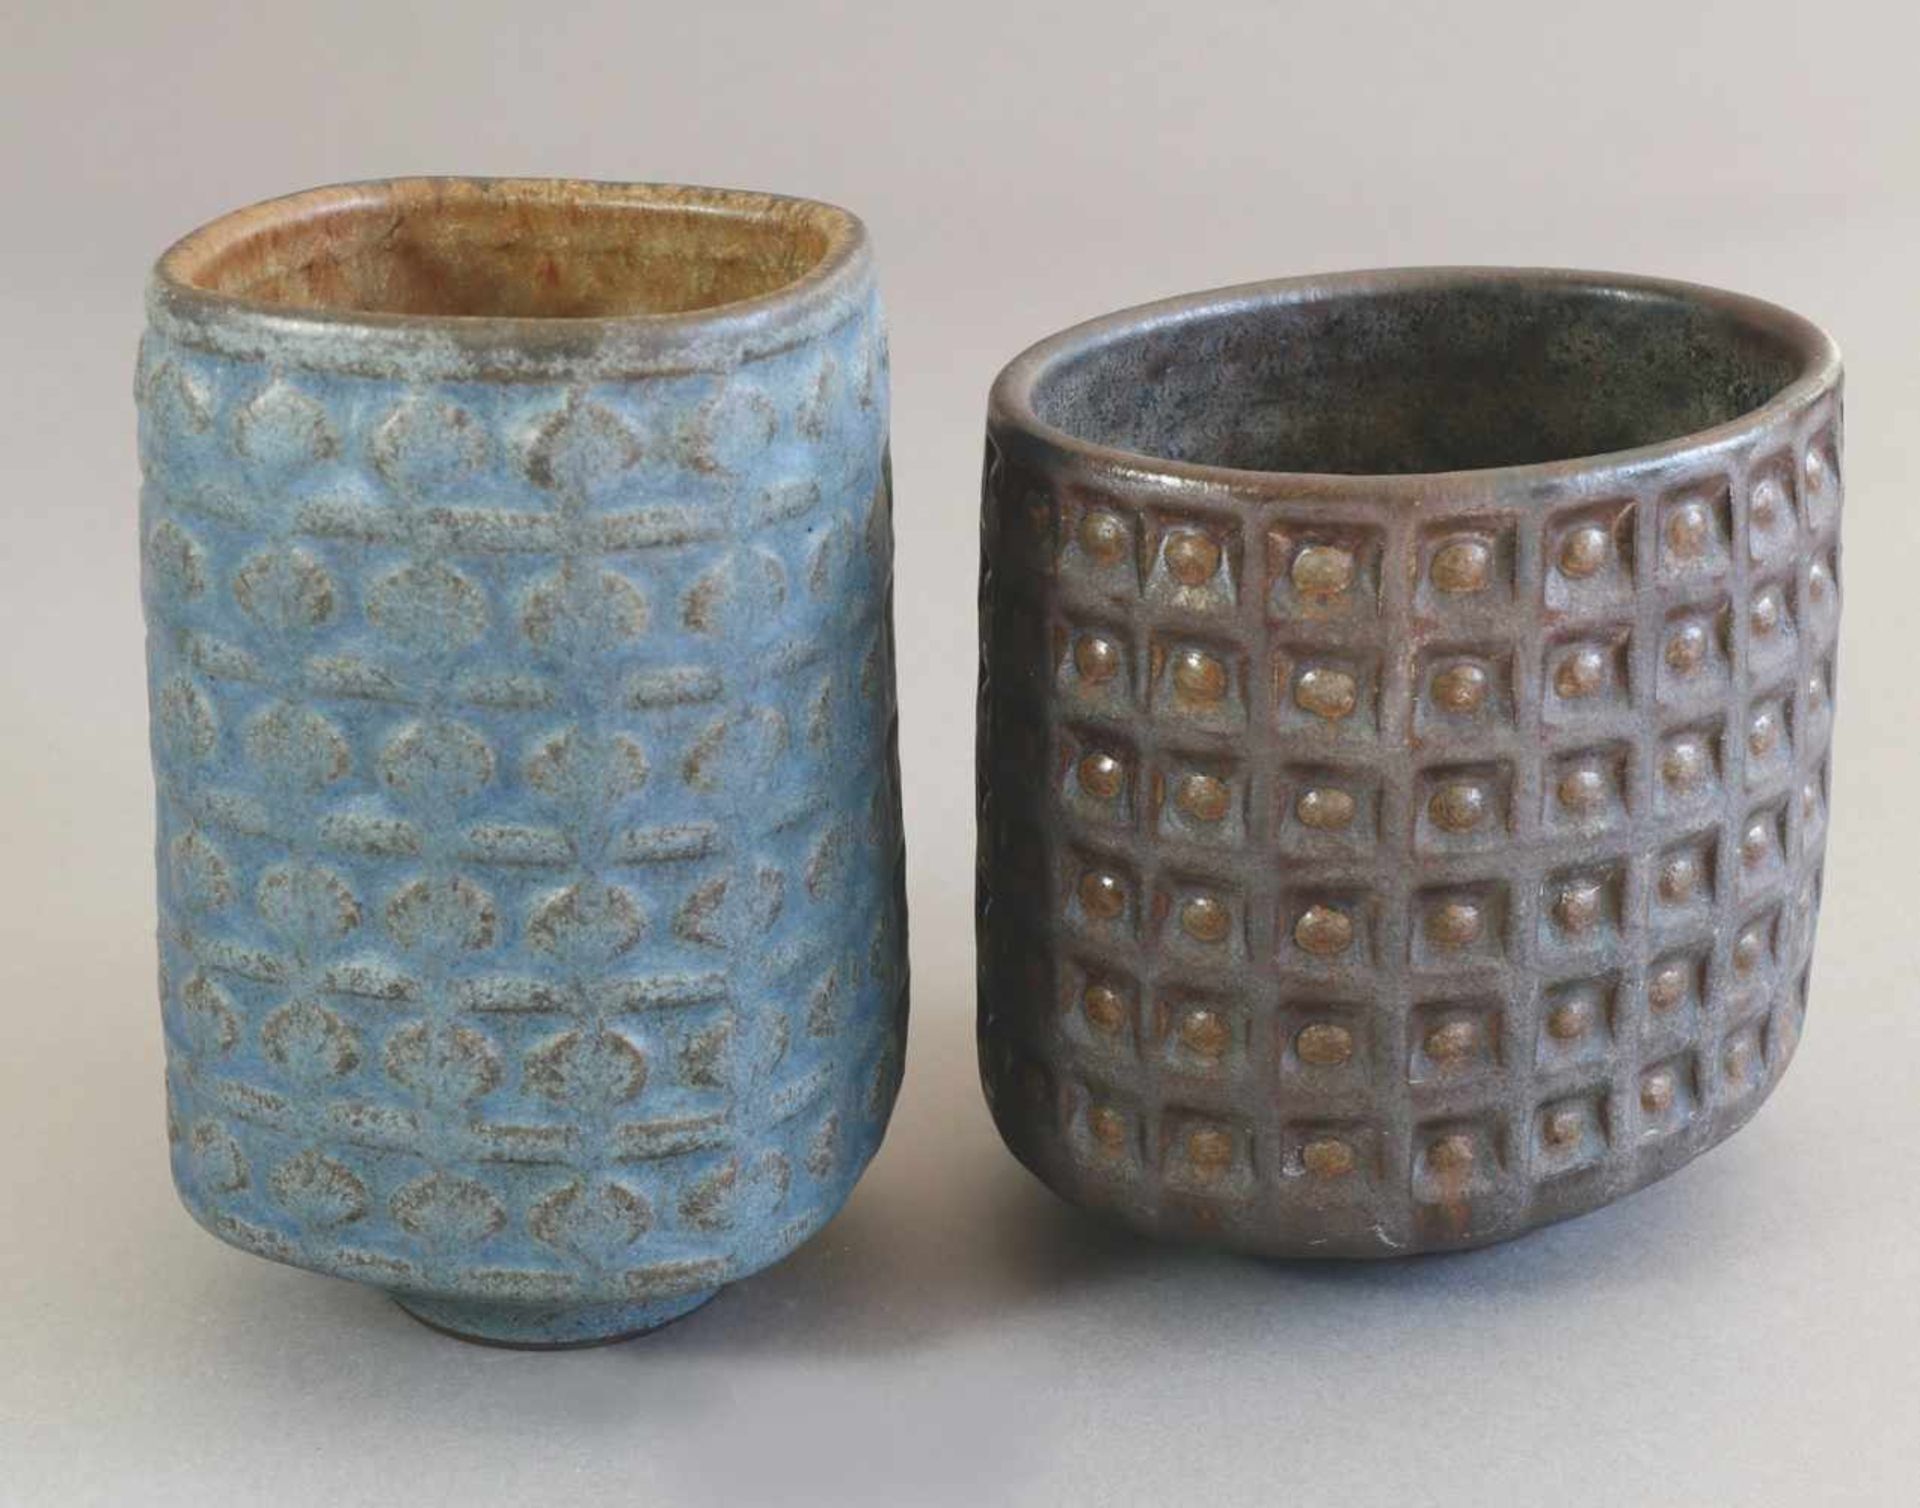 Karl Scheidum 19652 Vasen mit Reliefdekor. Um 1965. Keramik. Regelmäßig reliefiertes geometrisches